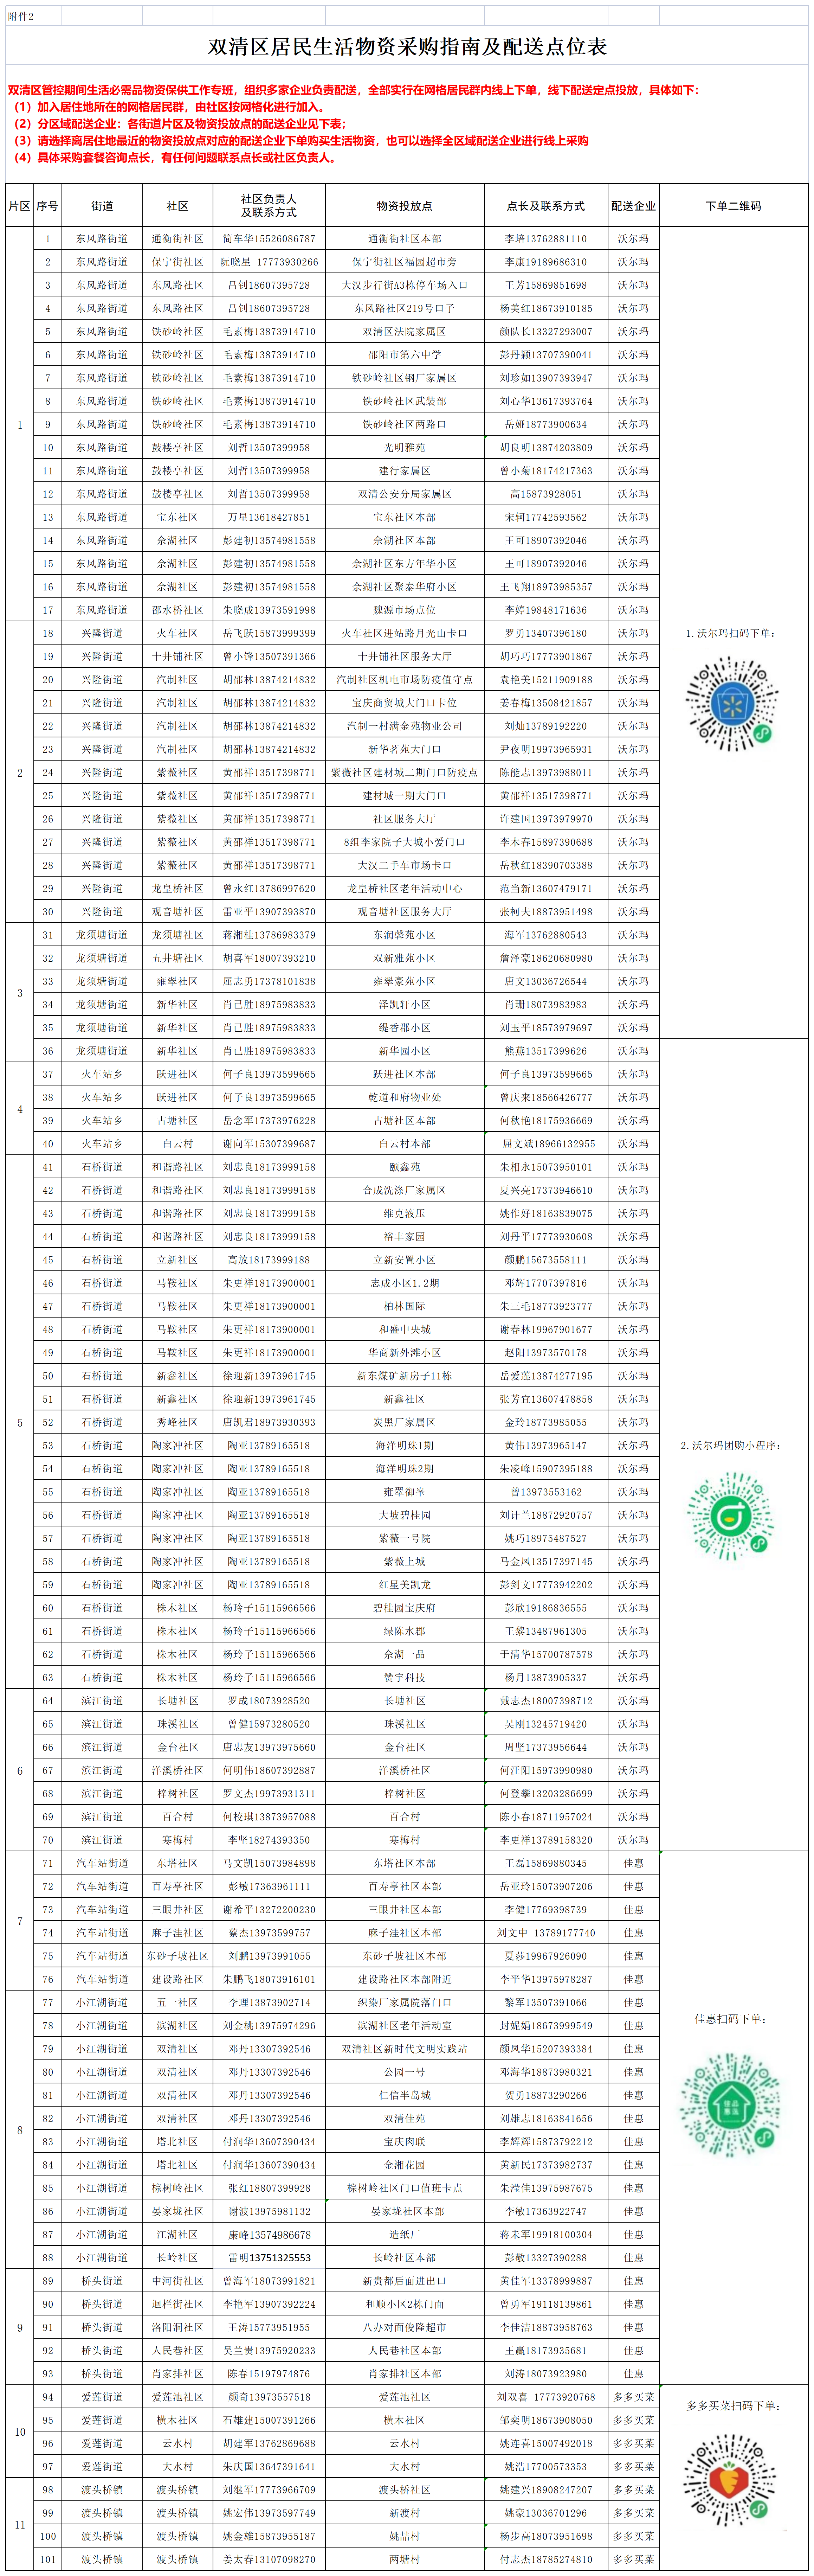 双清区生活物资采购指南-汇总(11.2)(2)(1)_A1I105.png